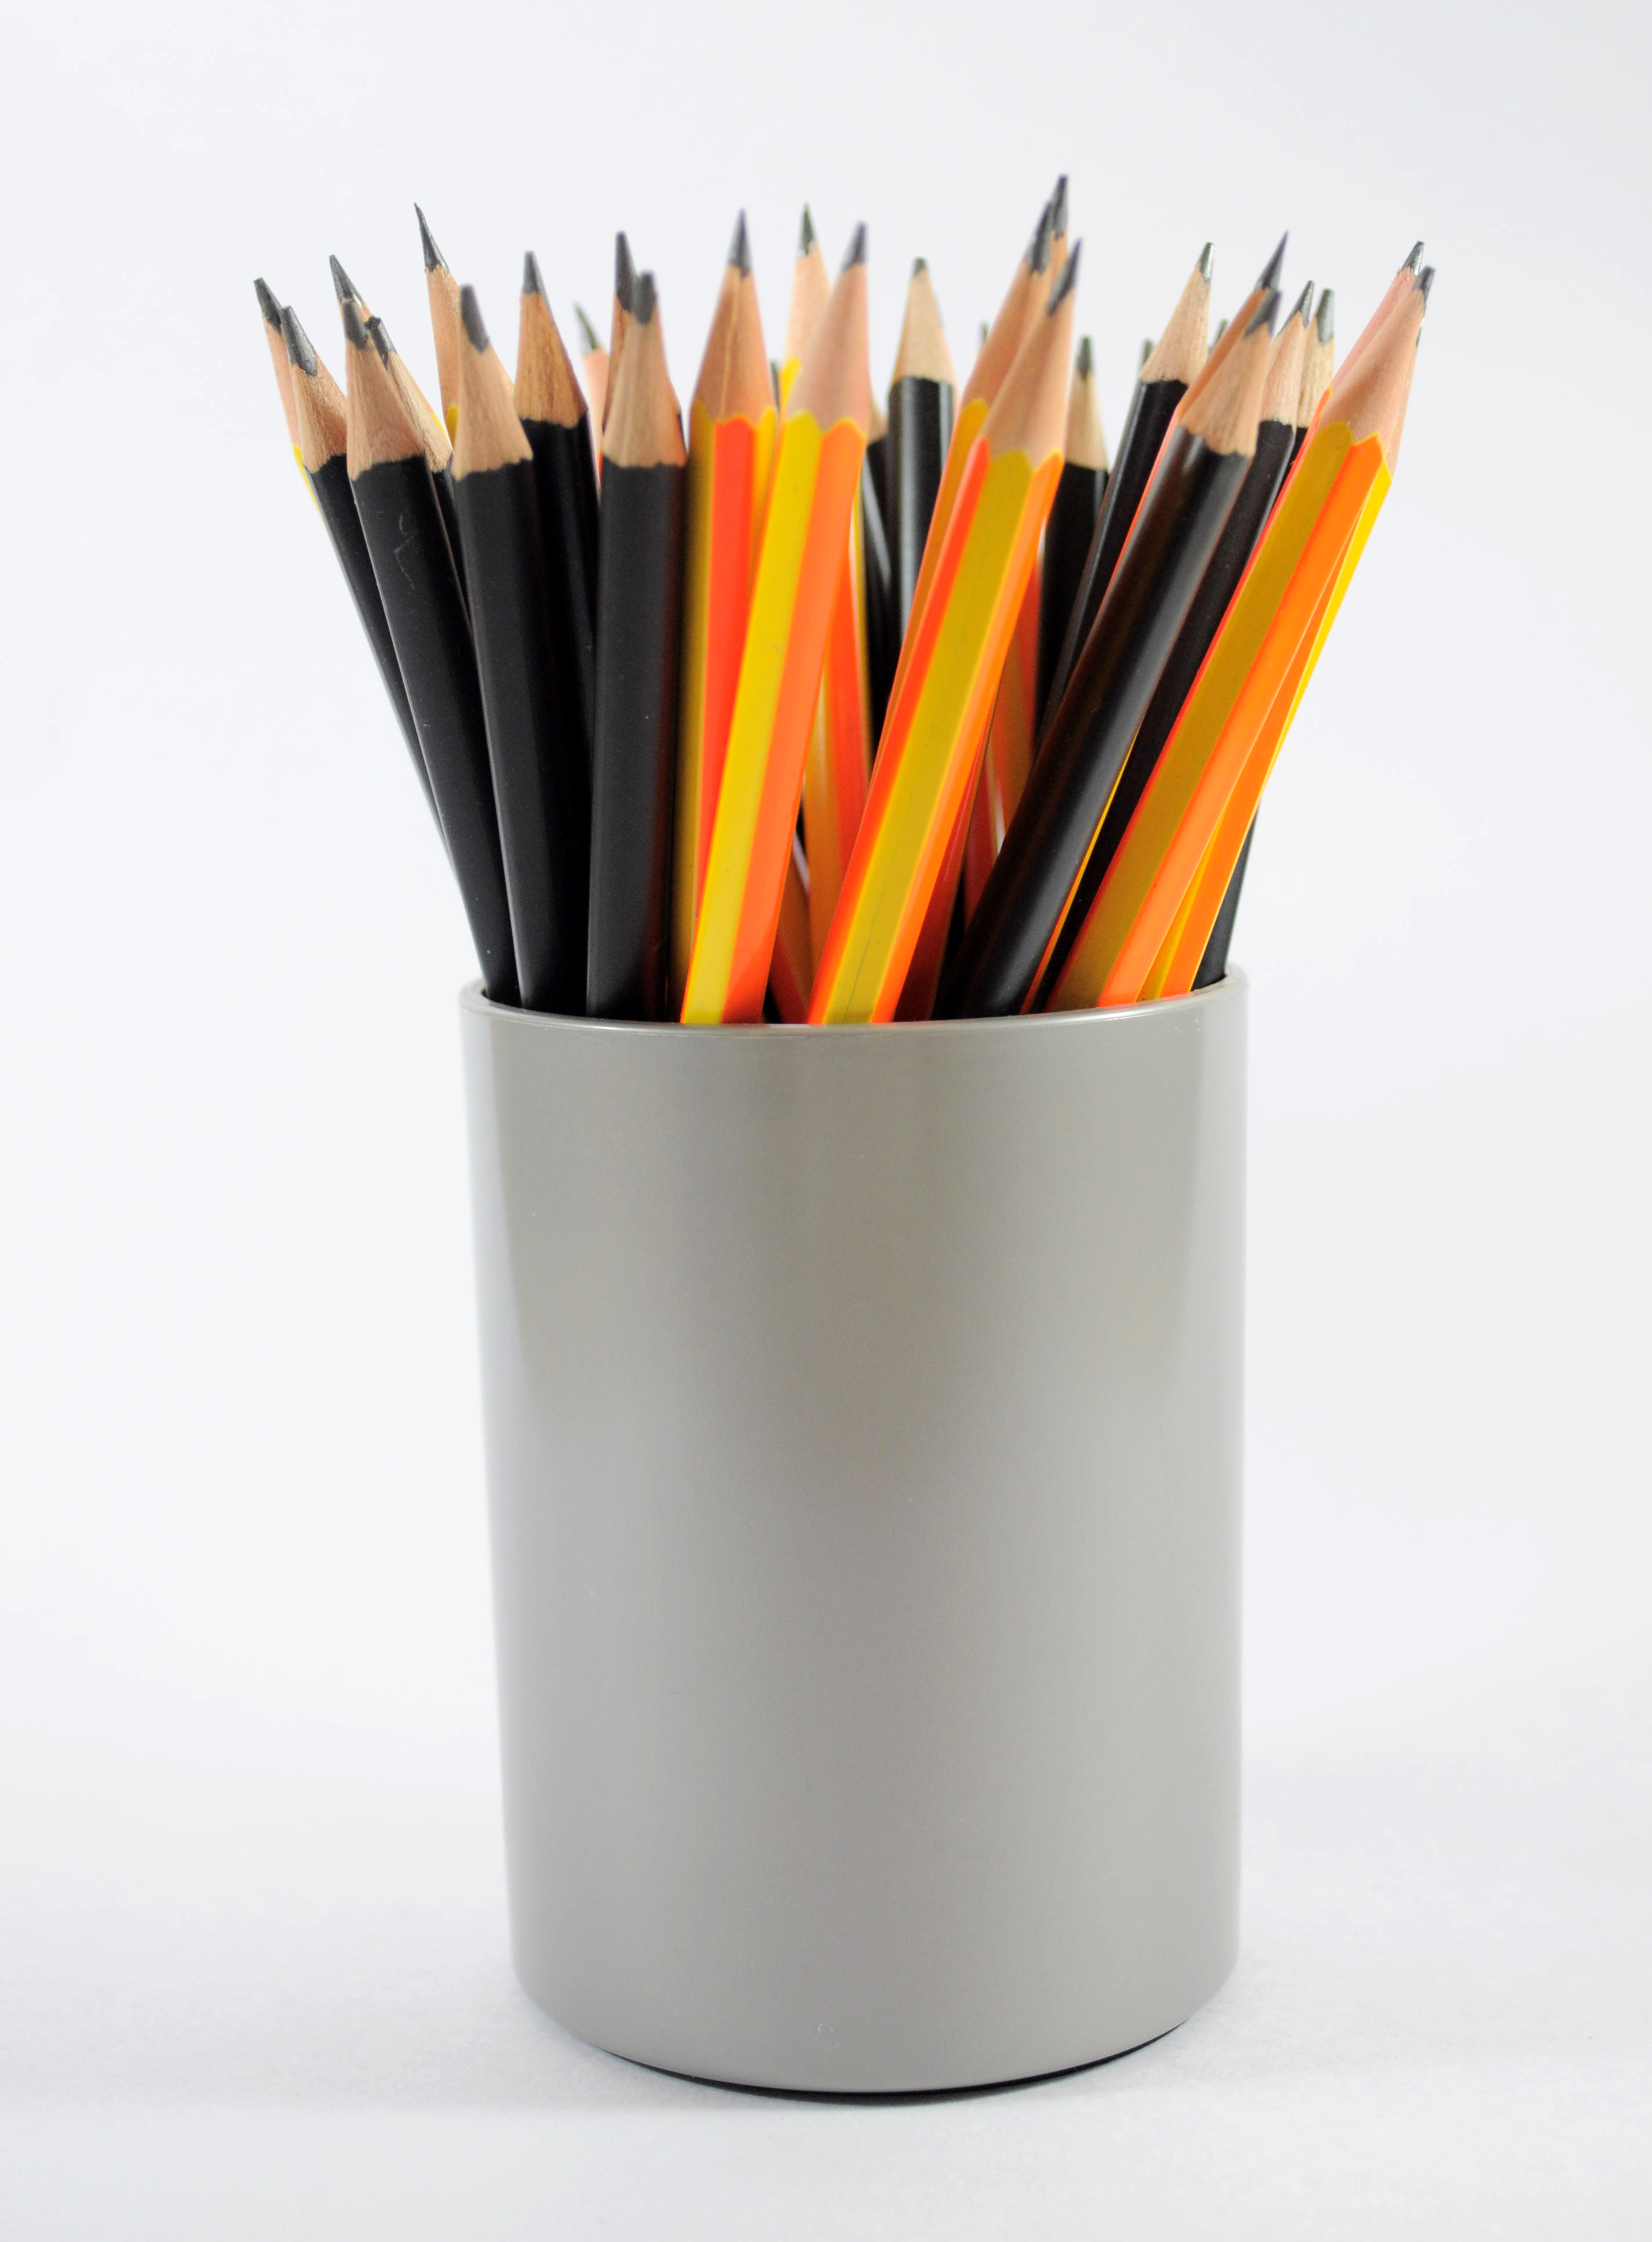 Pencil бесплатная. Карандаши в стакане. Стаканчик для карандашей. Карандашница с карандашами. Цветные карандаши в карандашнице.